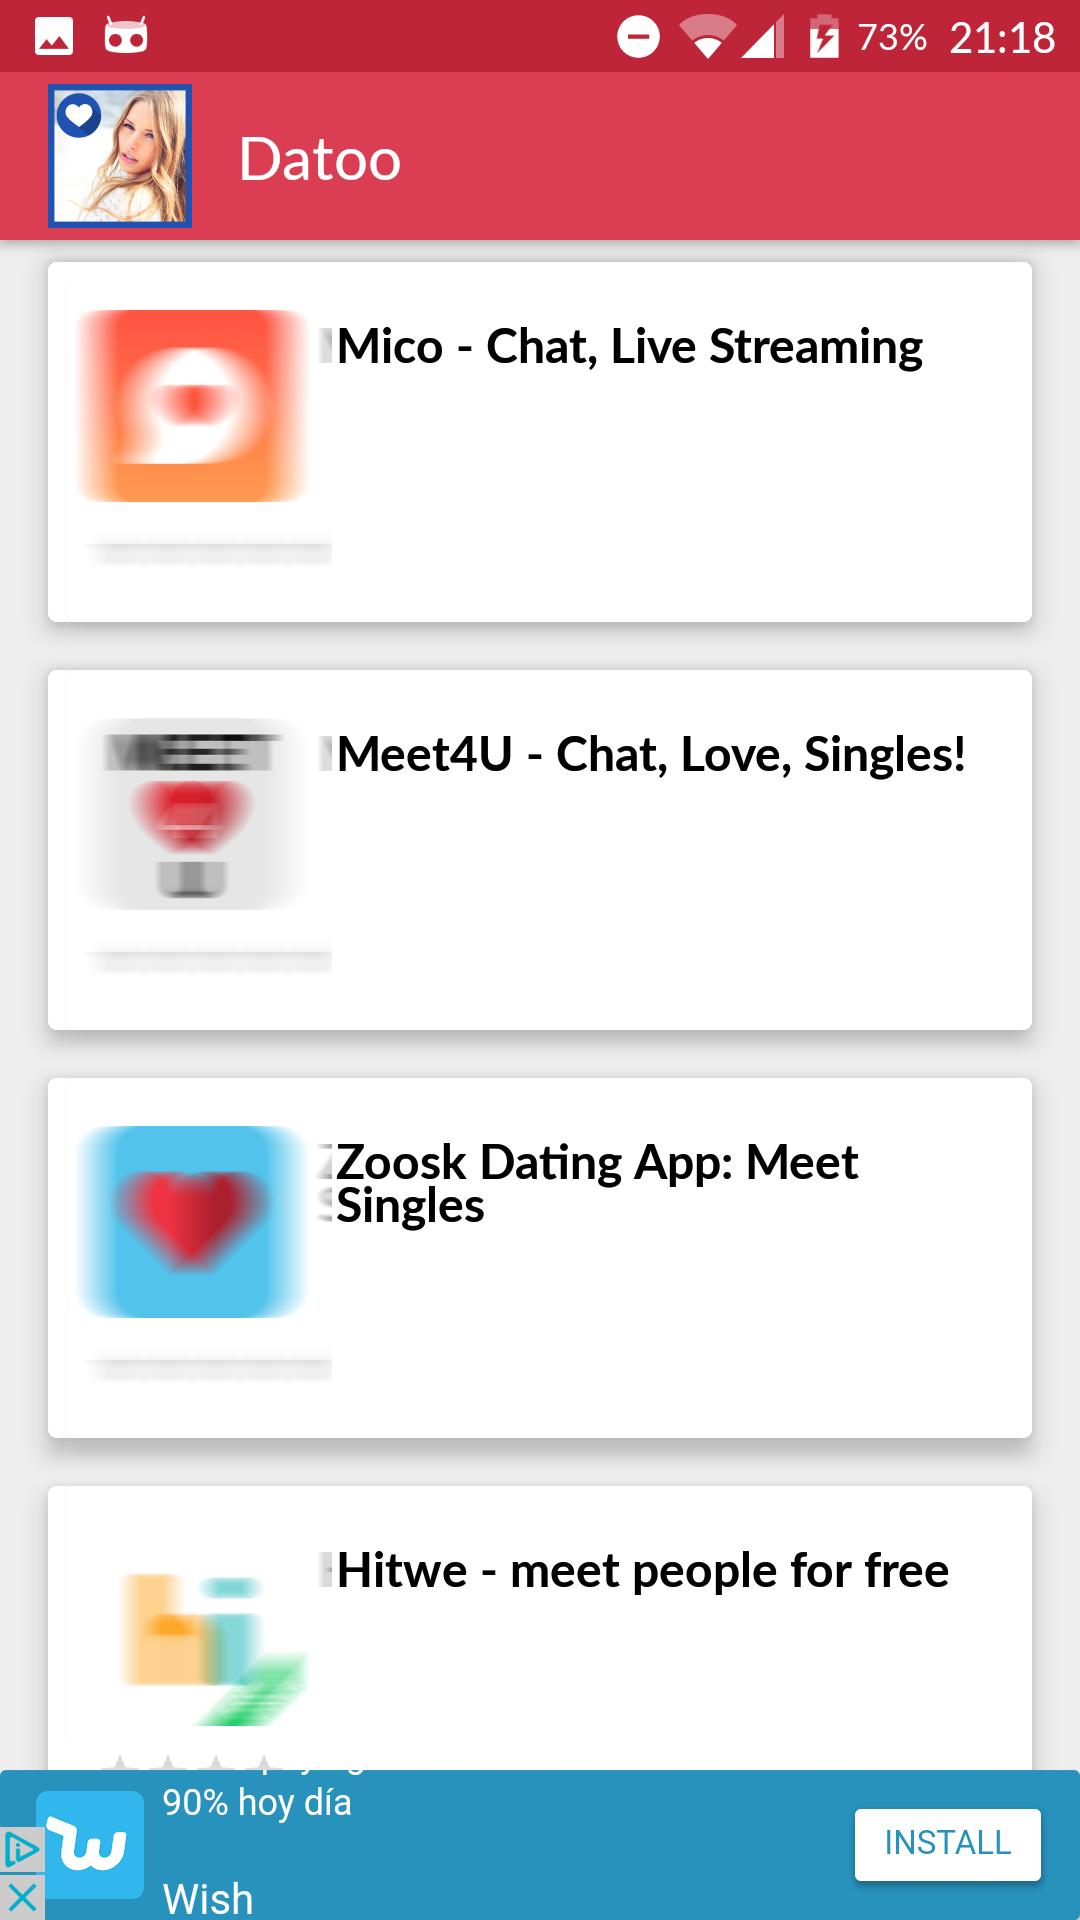 welche dating app ist die beste kostenlos)